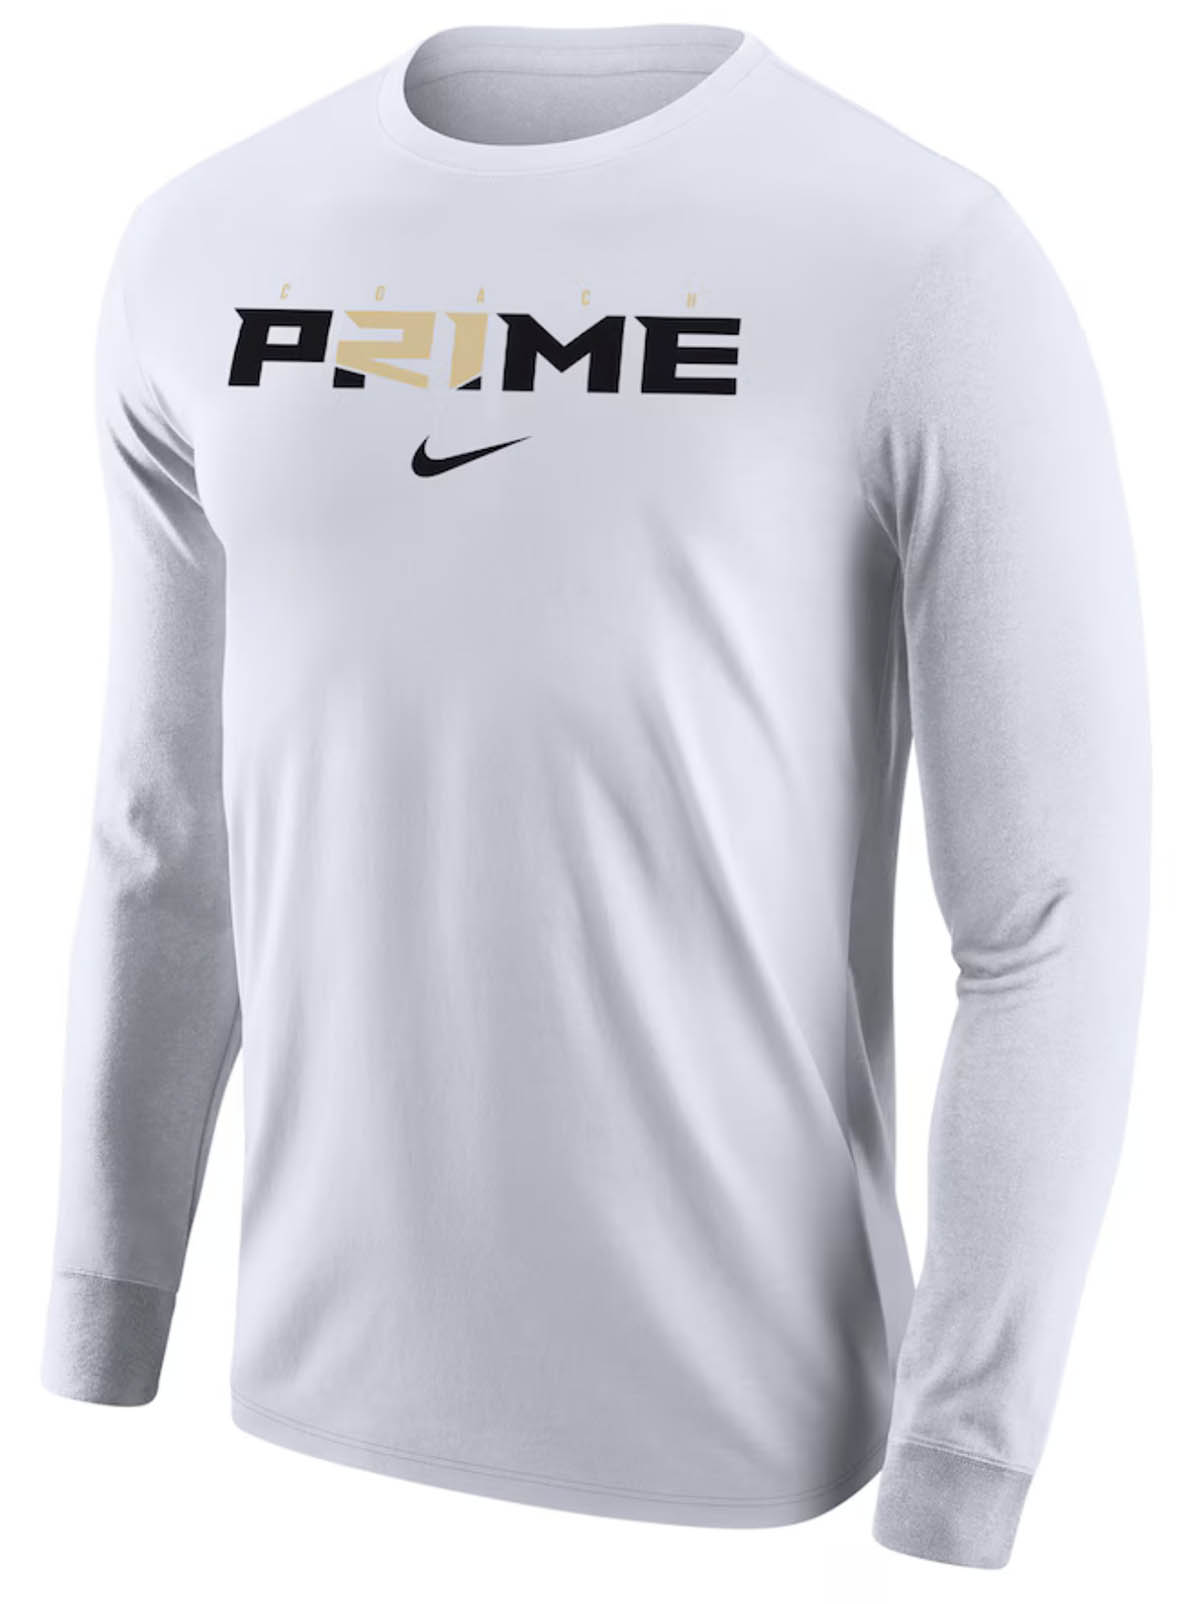 Nike-Deion-Sanders-Prime-Long-Sleeve-T-Shirt-White-Gold